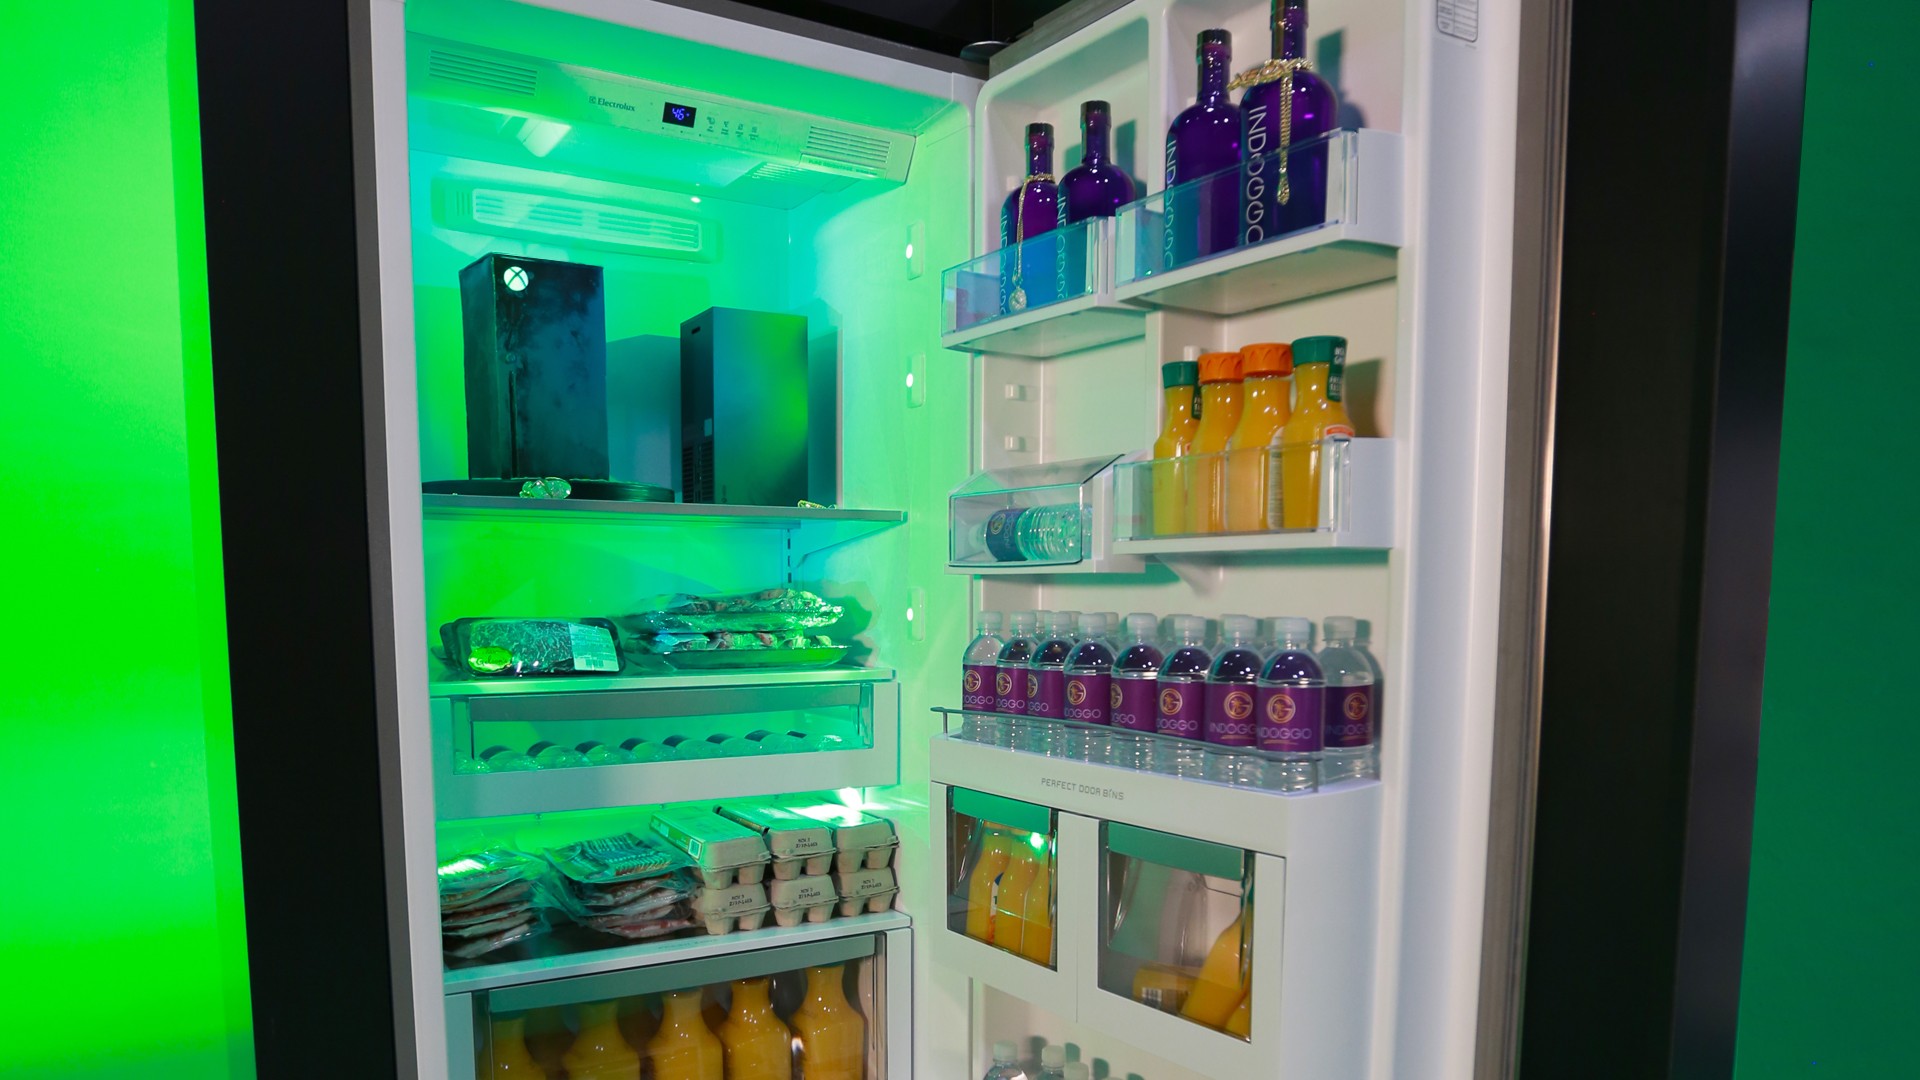 Le mini-frigo Xbox Series X est disponible